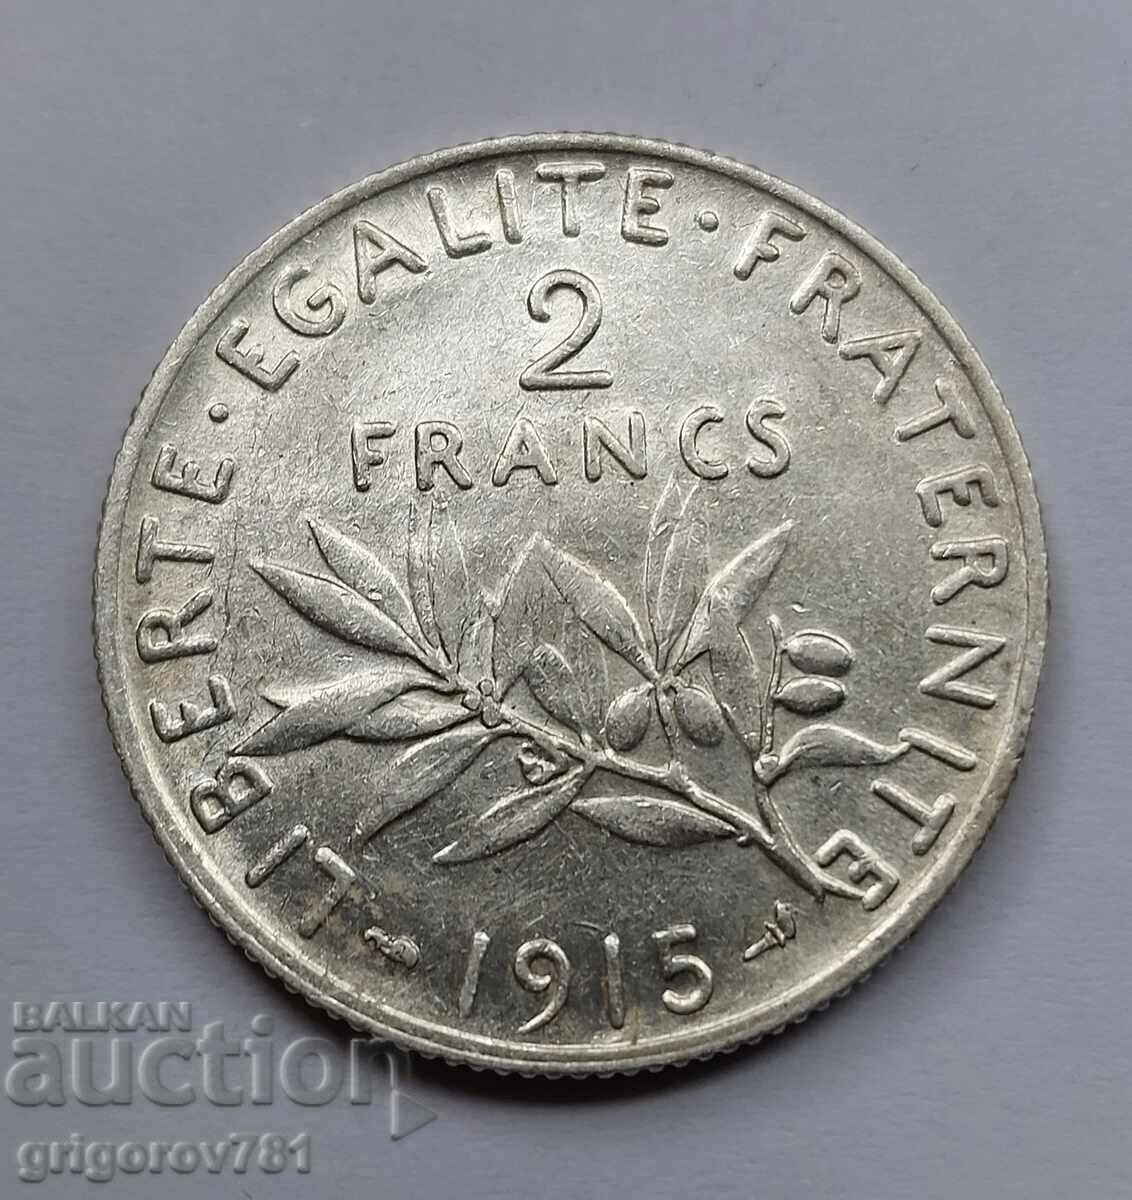 2 Franci Argint Franta 1915 - Moneda de argint #121